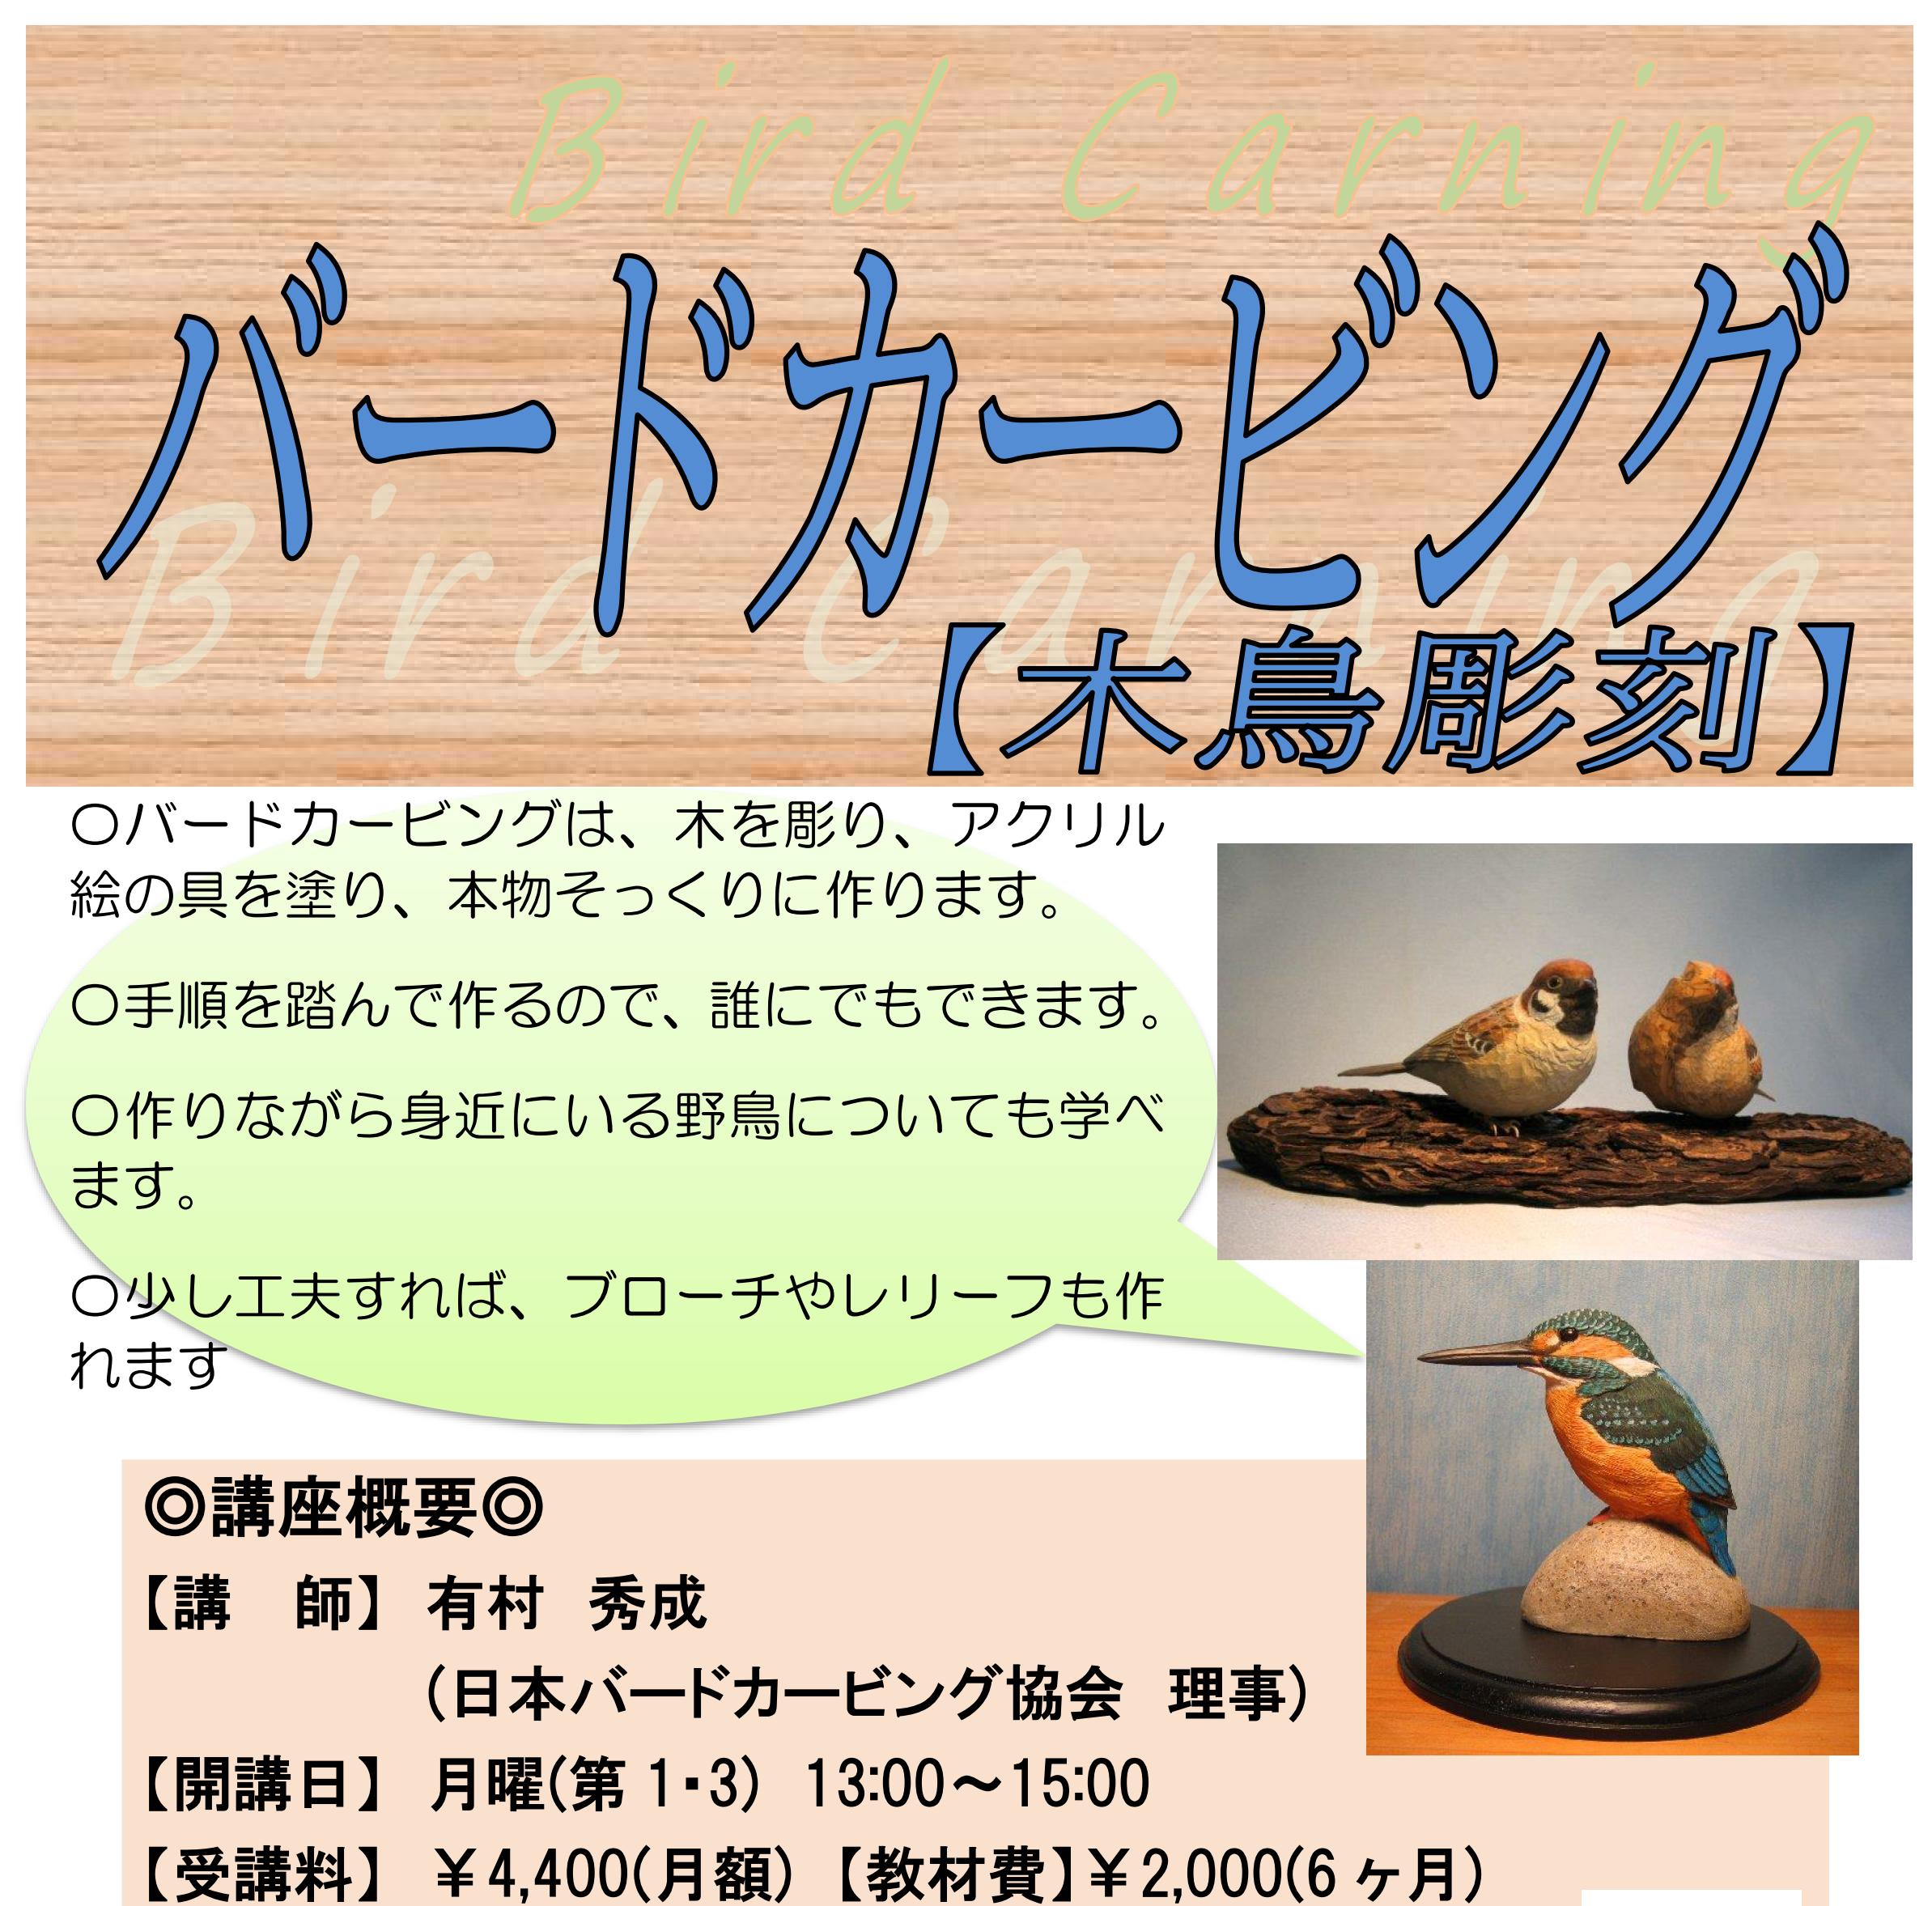 バードカービング【木鳥彫刻】 - 土浦カルチャー&健康スポーツセンター